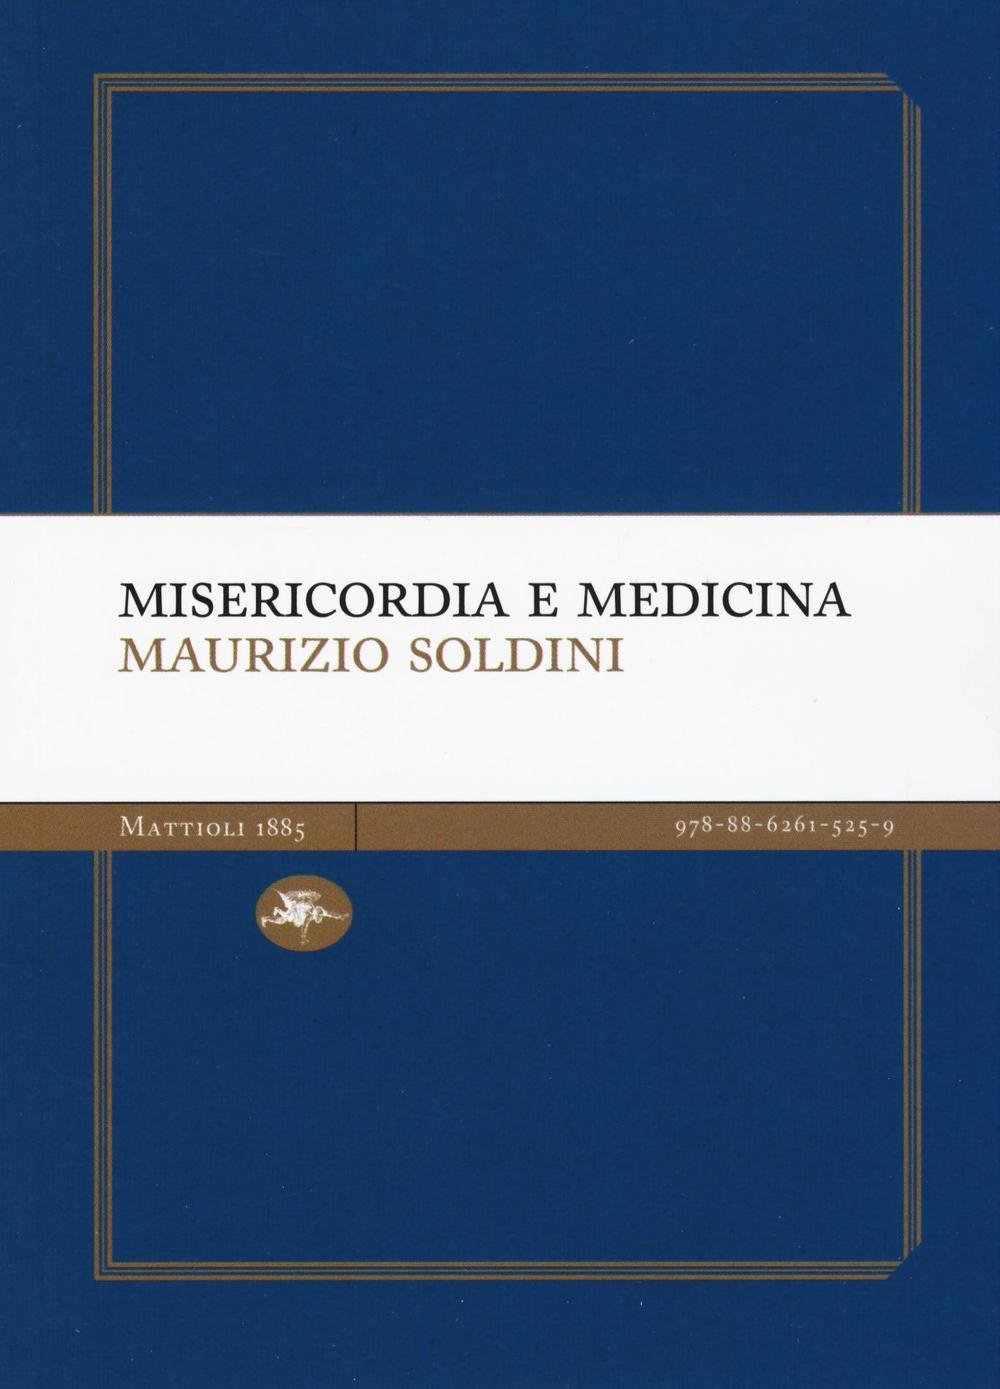 Image of Misericordia e medicina